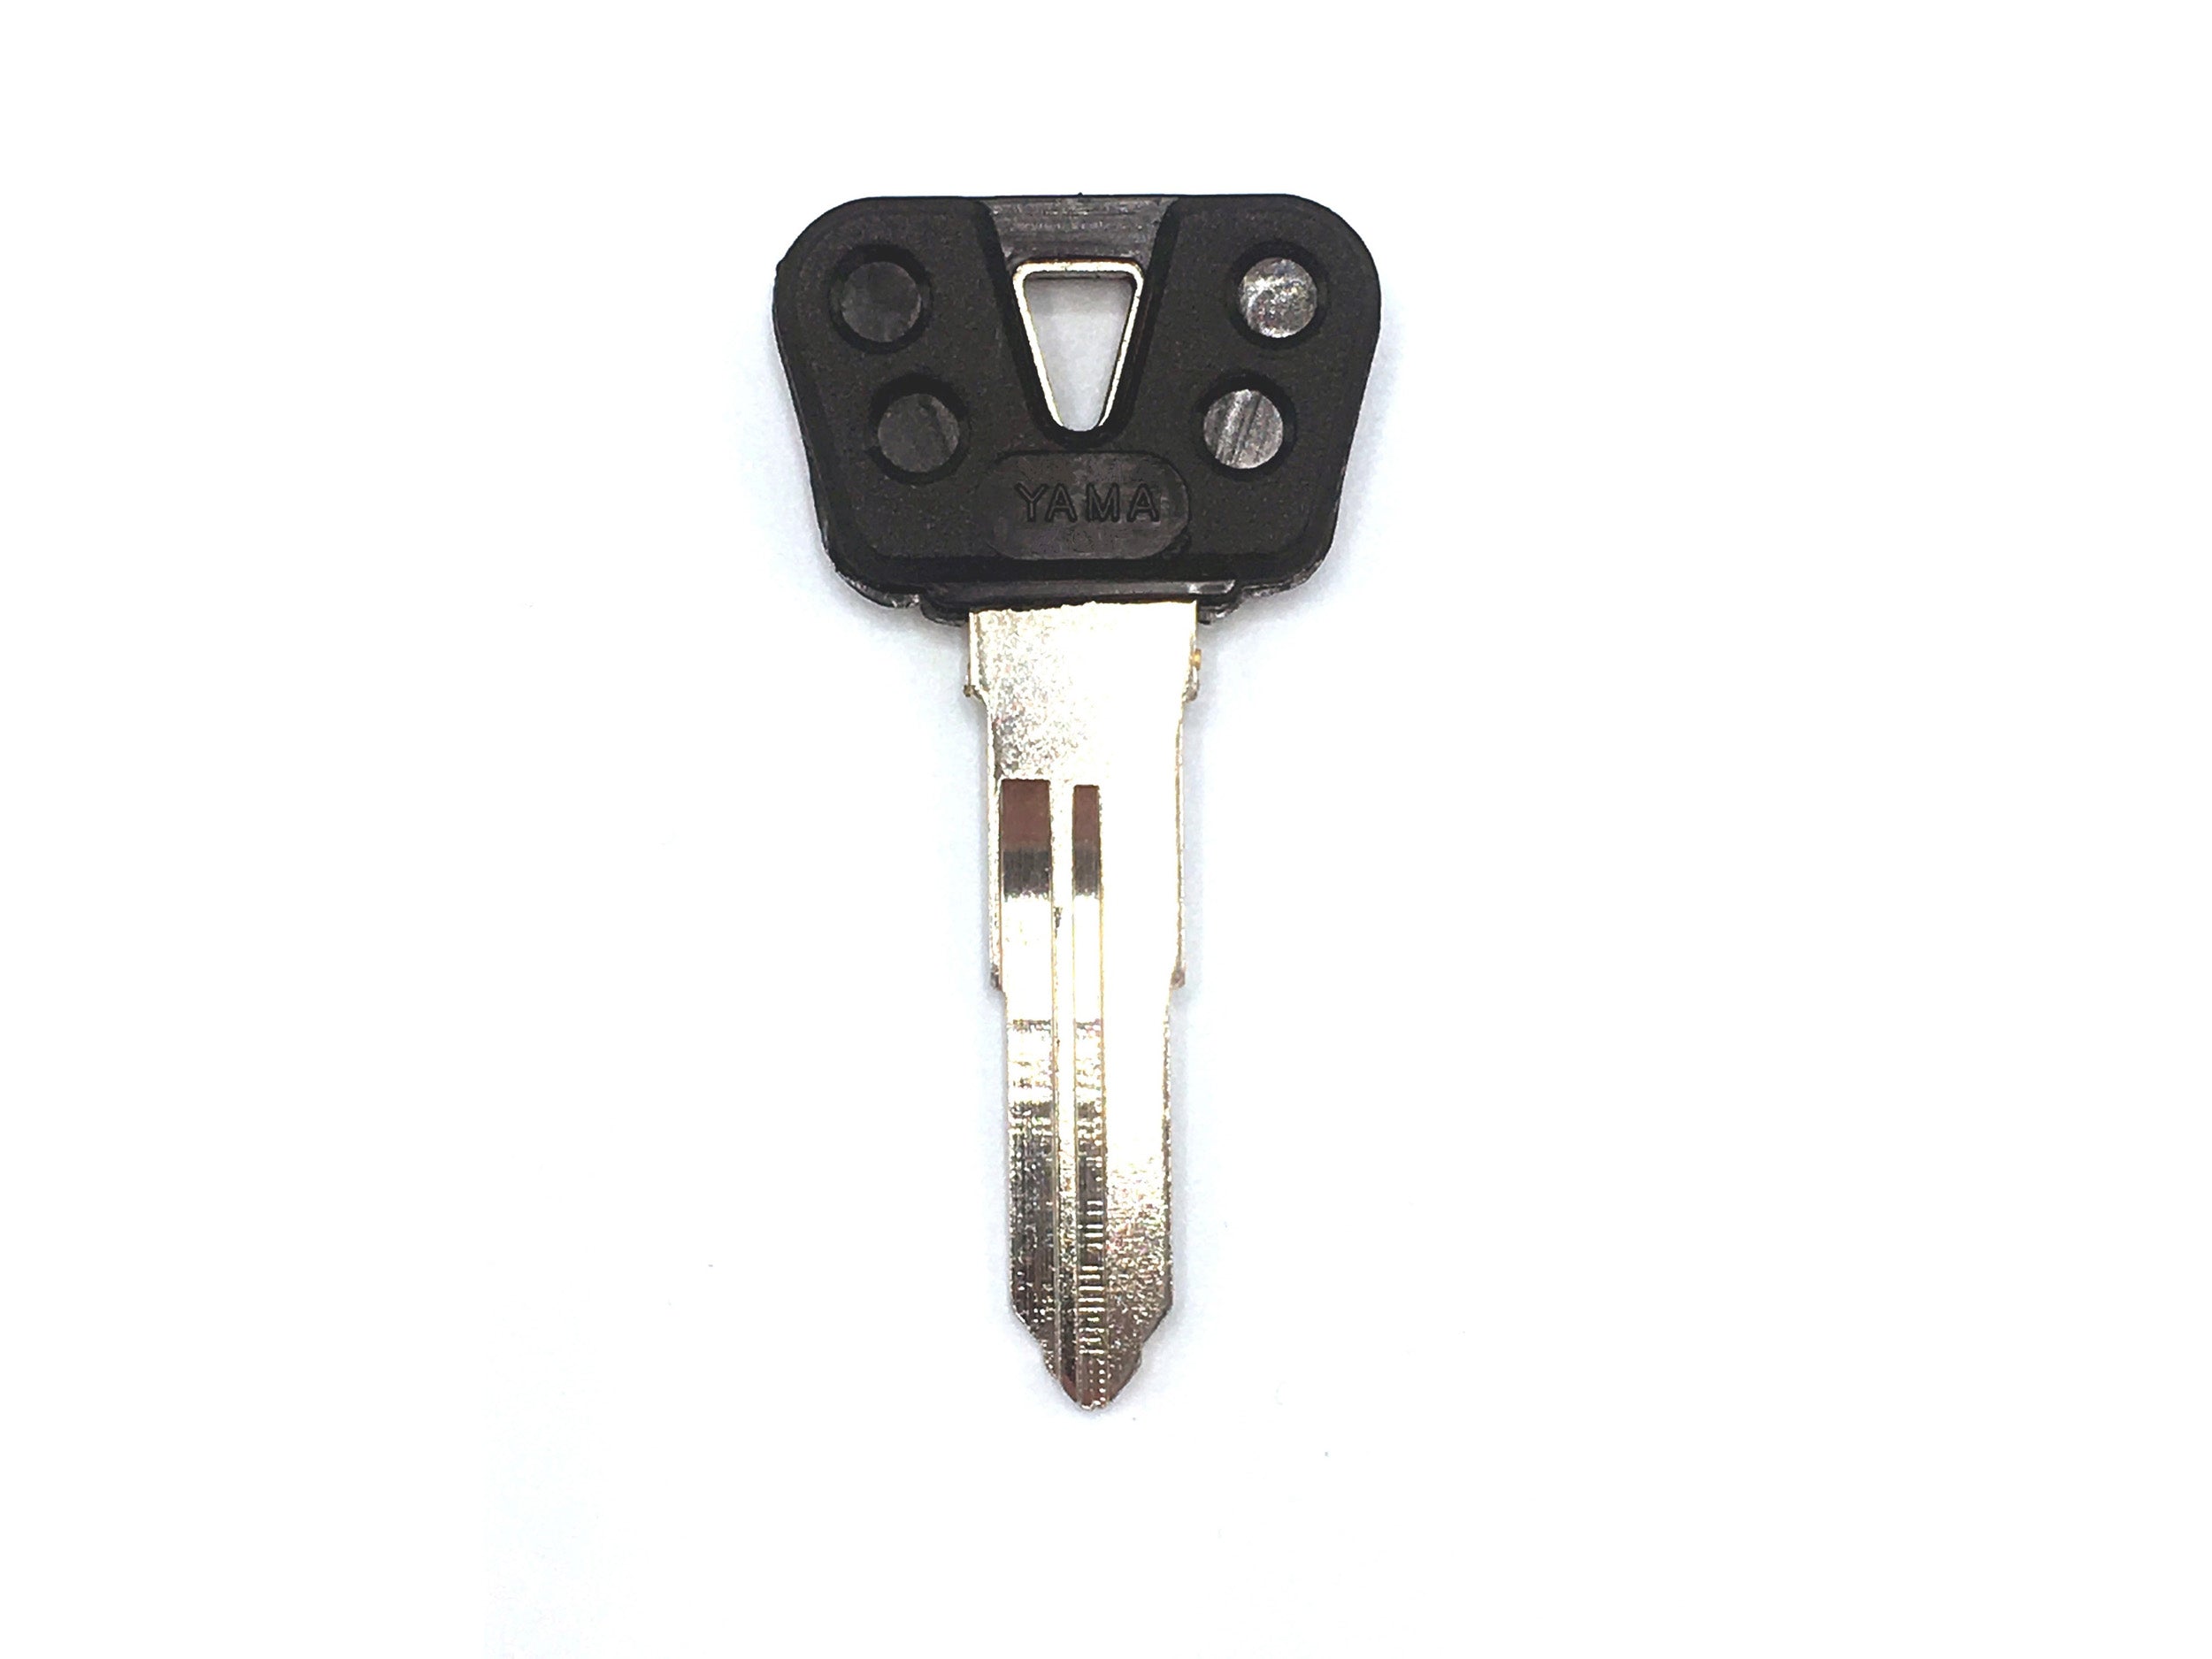 Yamaha TW200 Ignition Key (oem style with plastic head) [2 SLITS, LEFTSIDE]